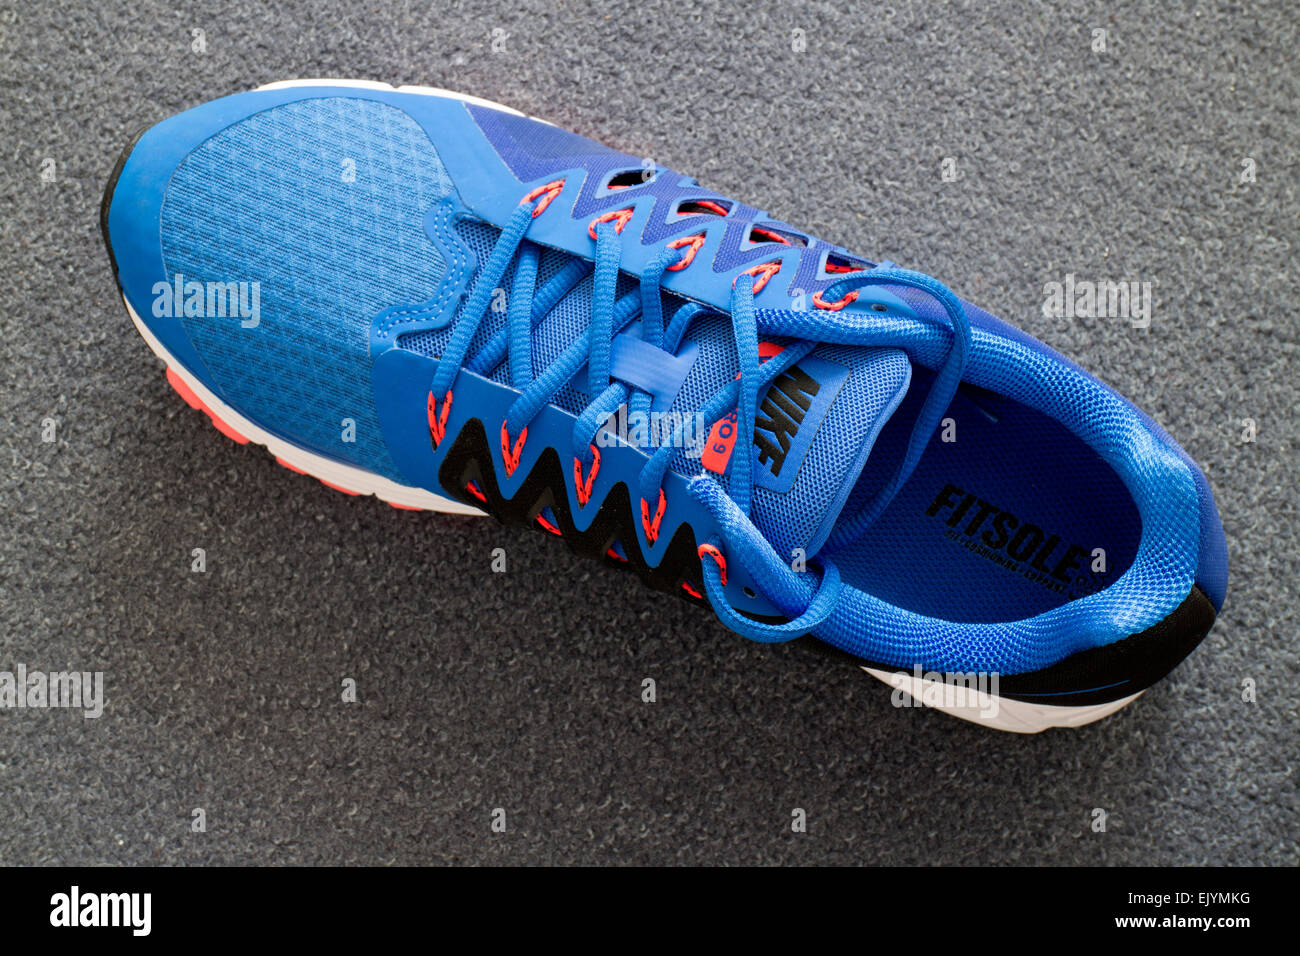 Nike Vomero 9 running shoe, new, top view Stock Photo - Alamy